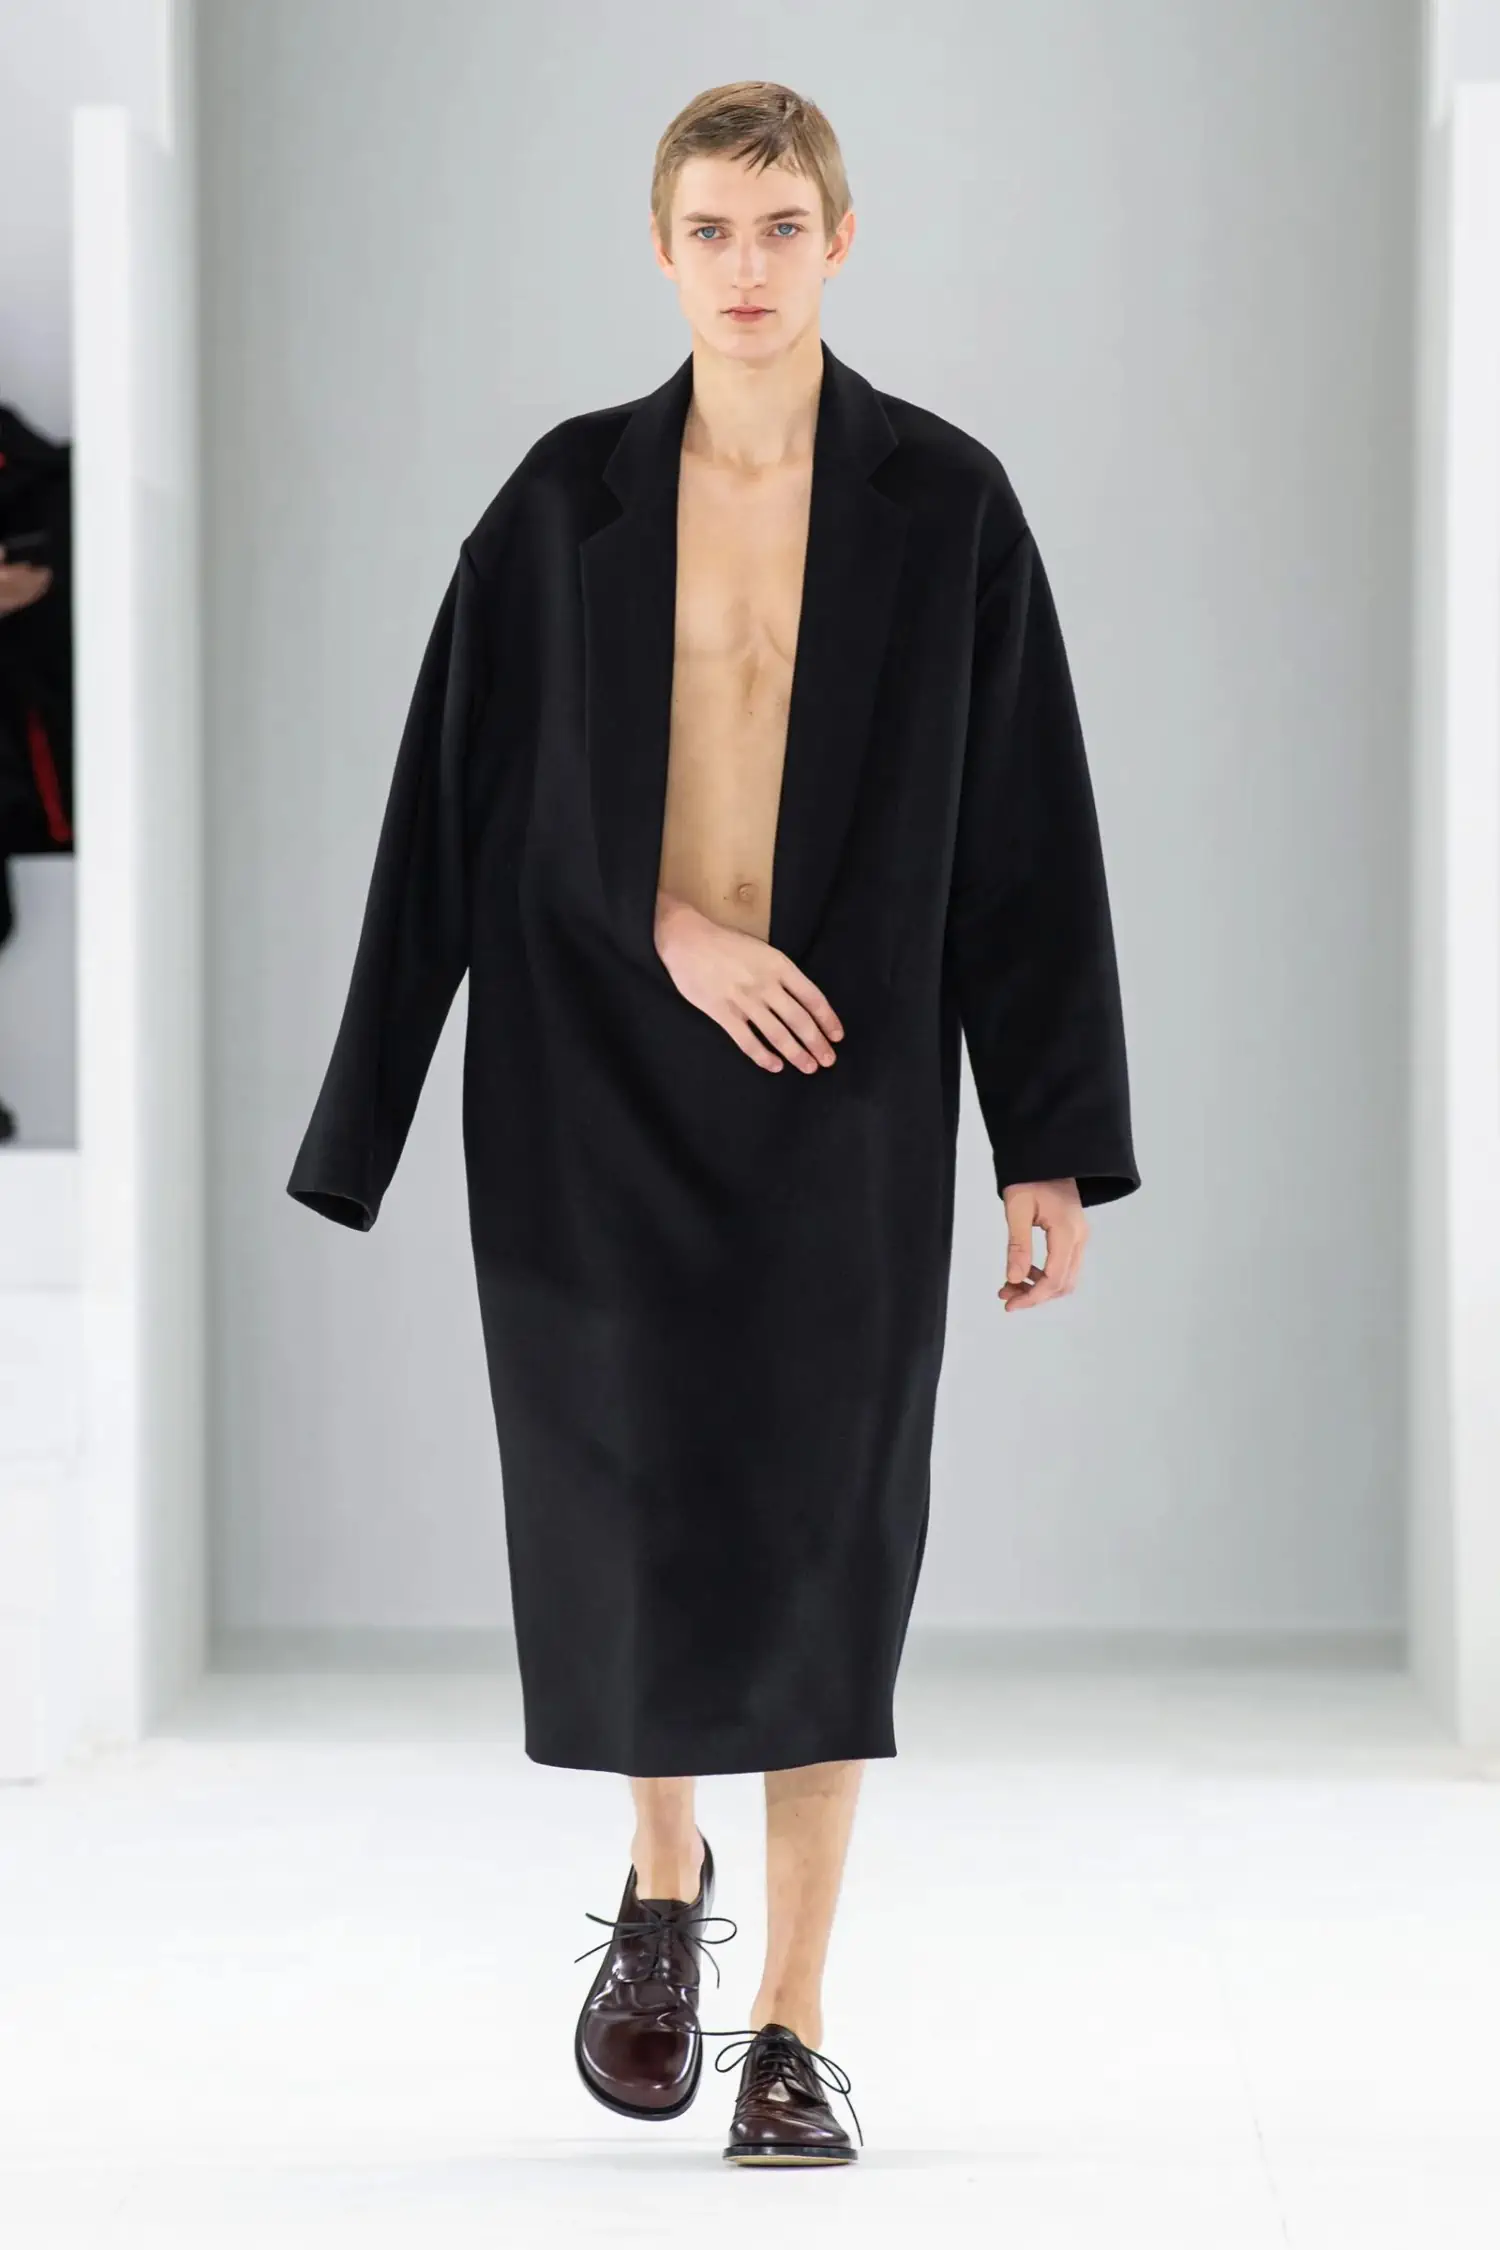 Loewe Fall/Winter 2023 - Paris Fashion Week Men’s